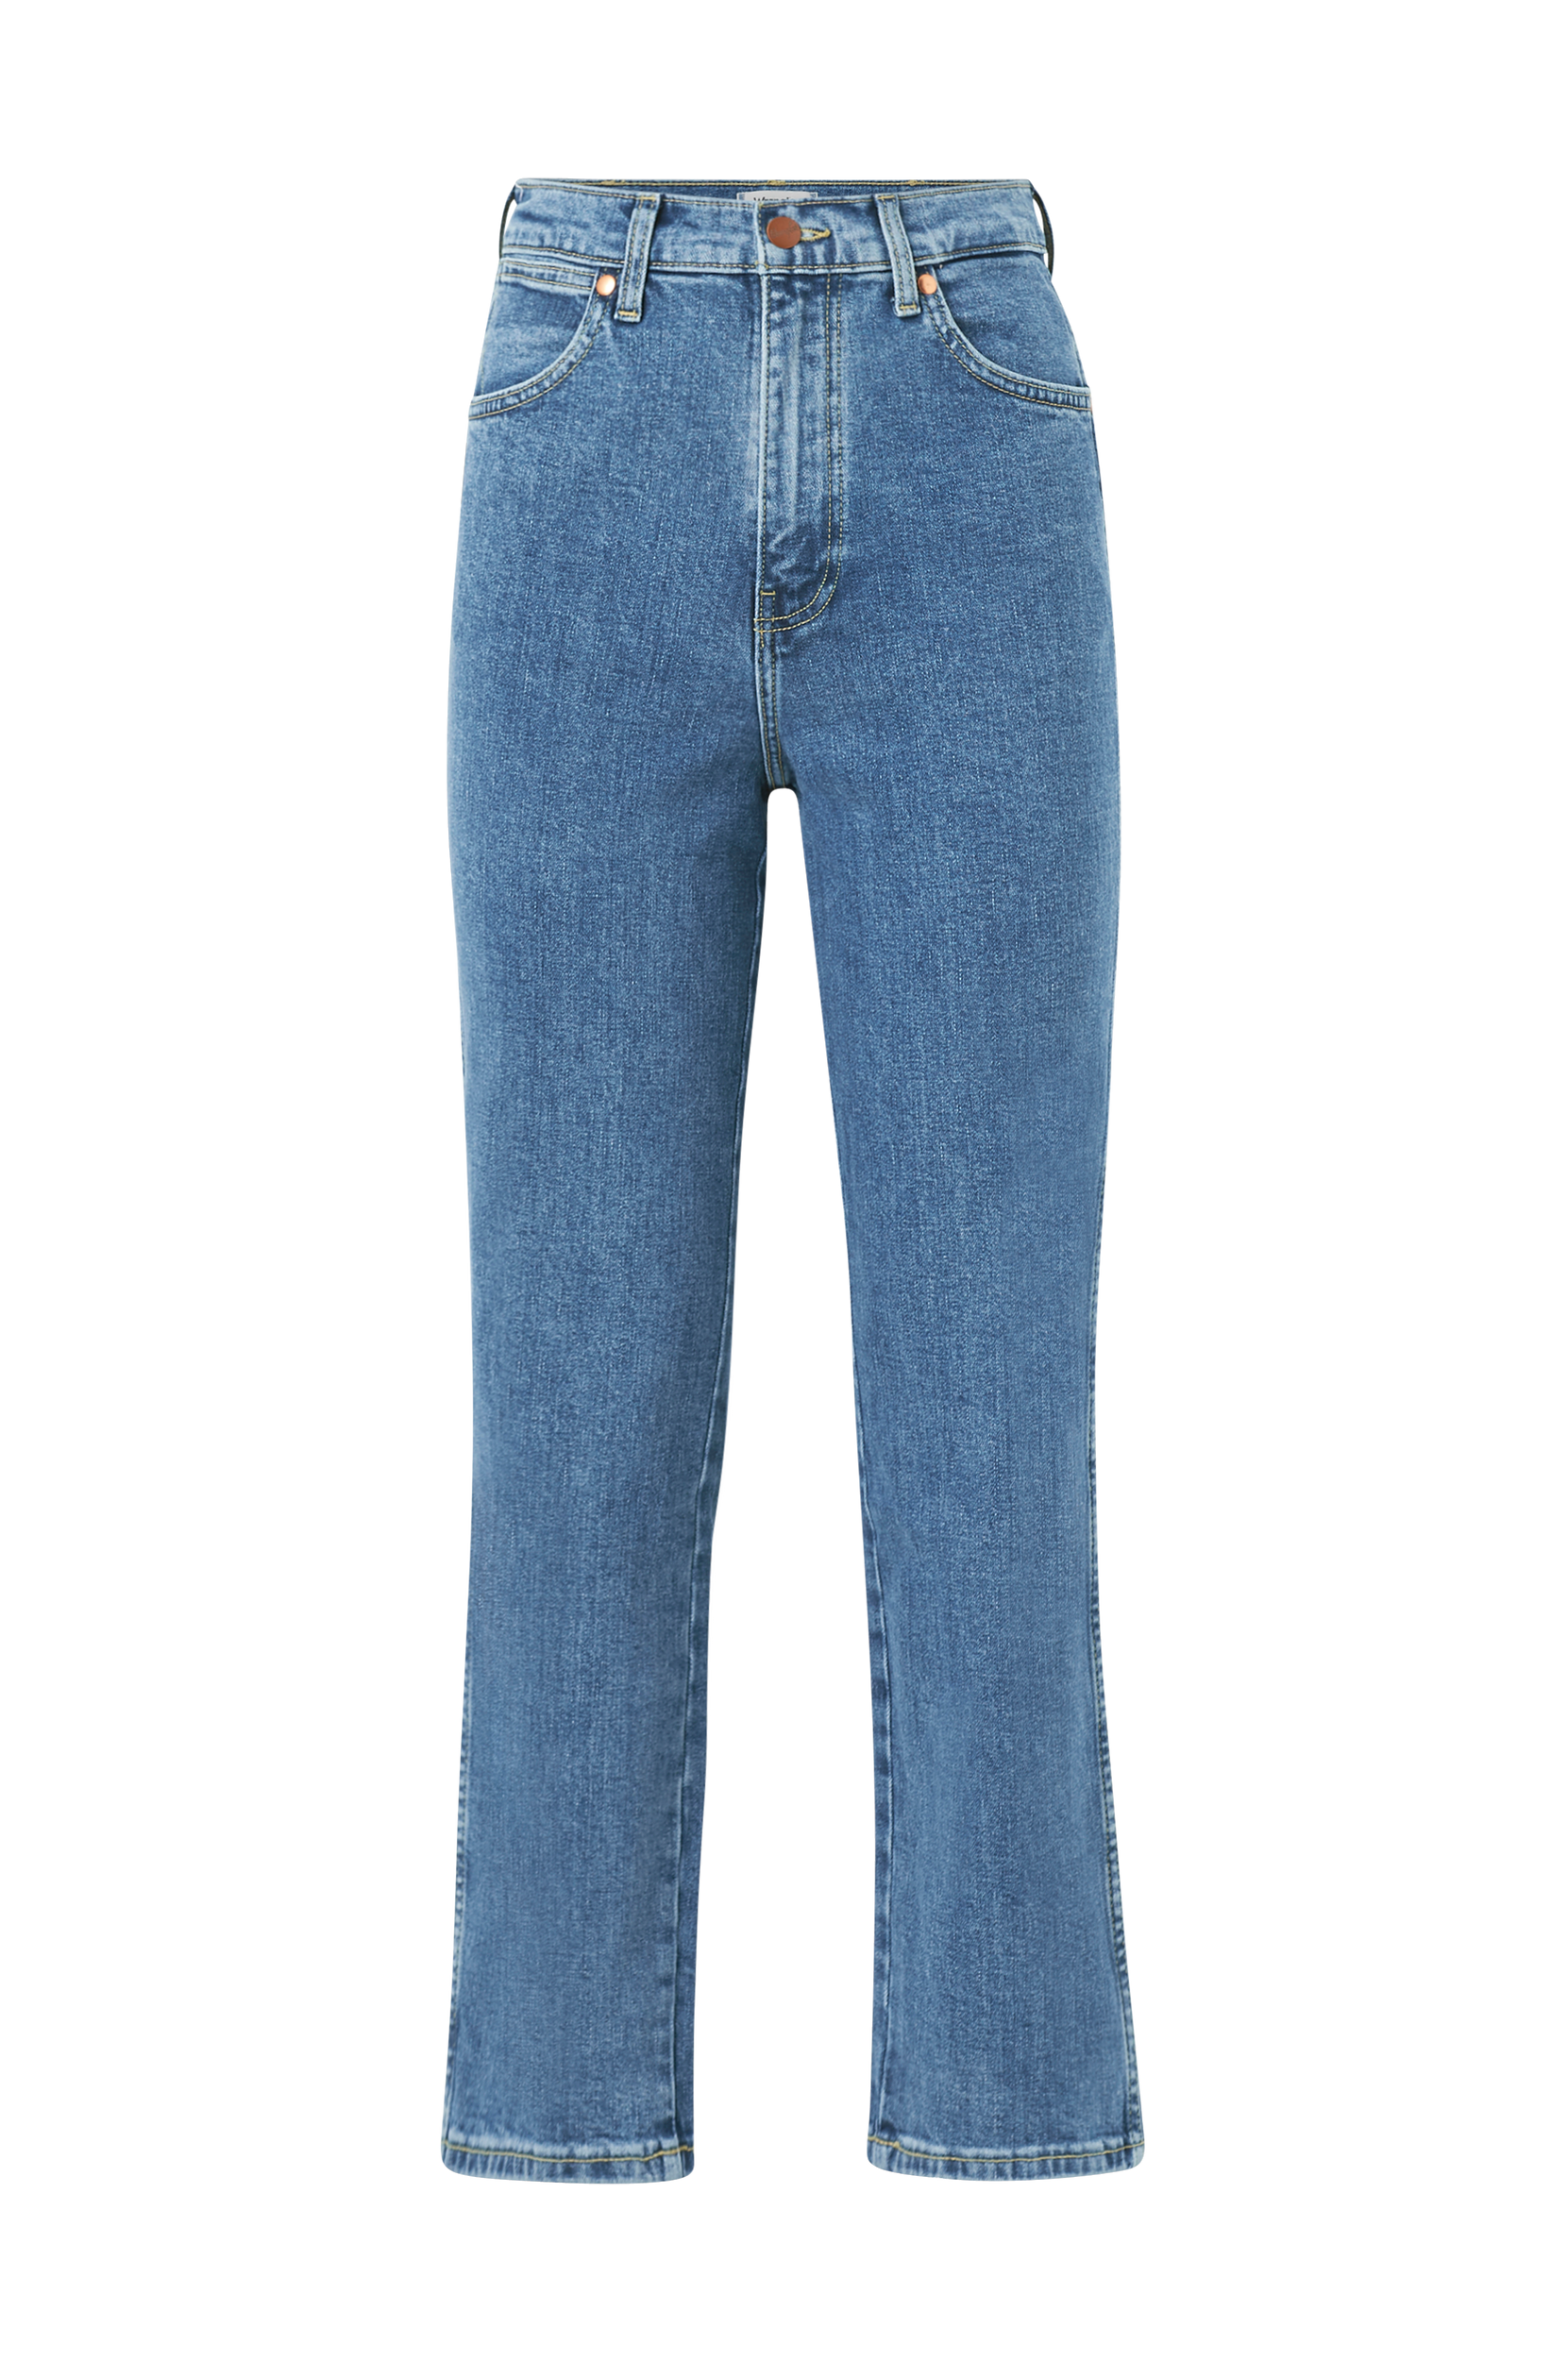 Wrangler - Jeans Wild West High Rise Straight - Blå - W29/L32